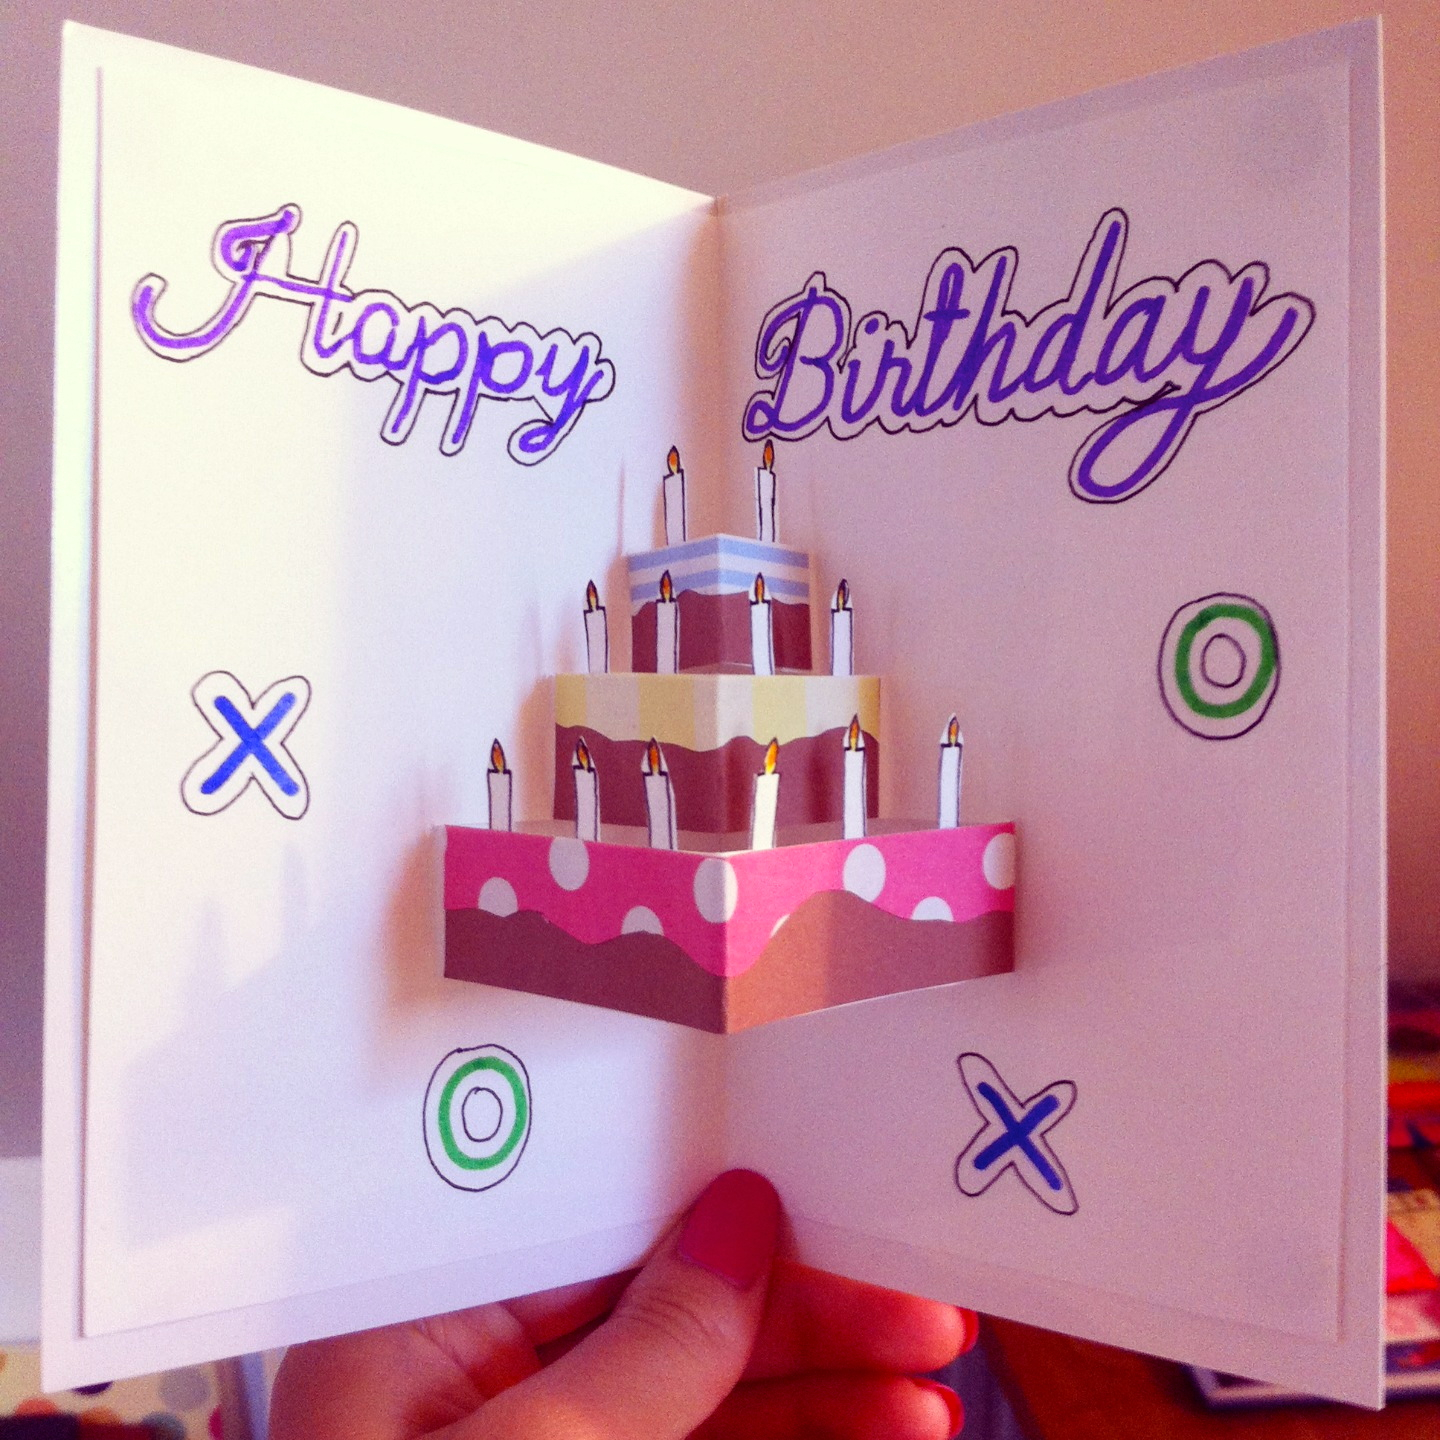 Easy Handmade Birthday Card Ideas 93 Ideas To Make A Birthday Card Create Birthday Cards 35